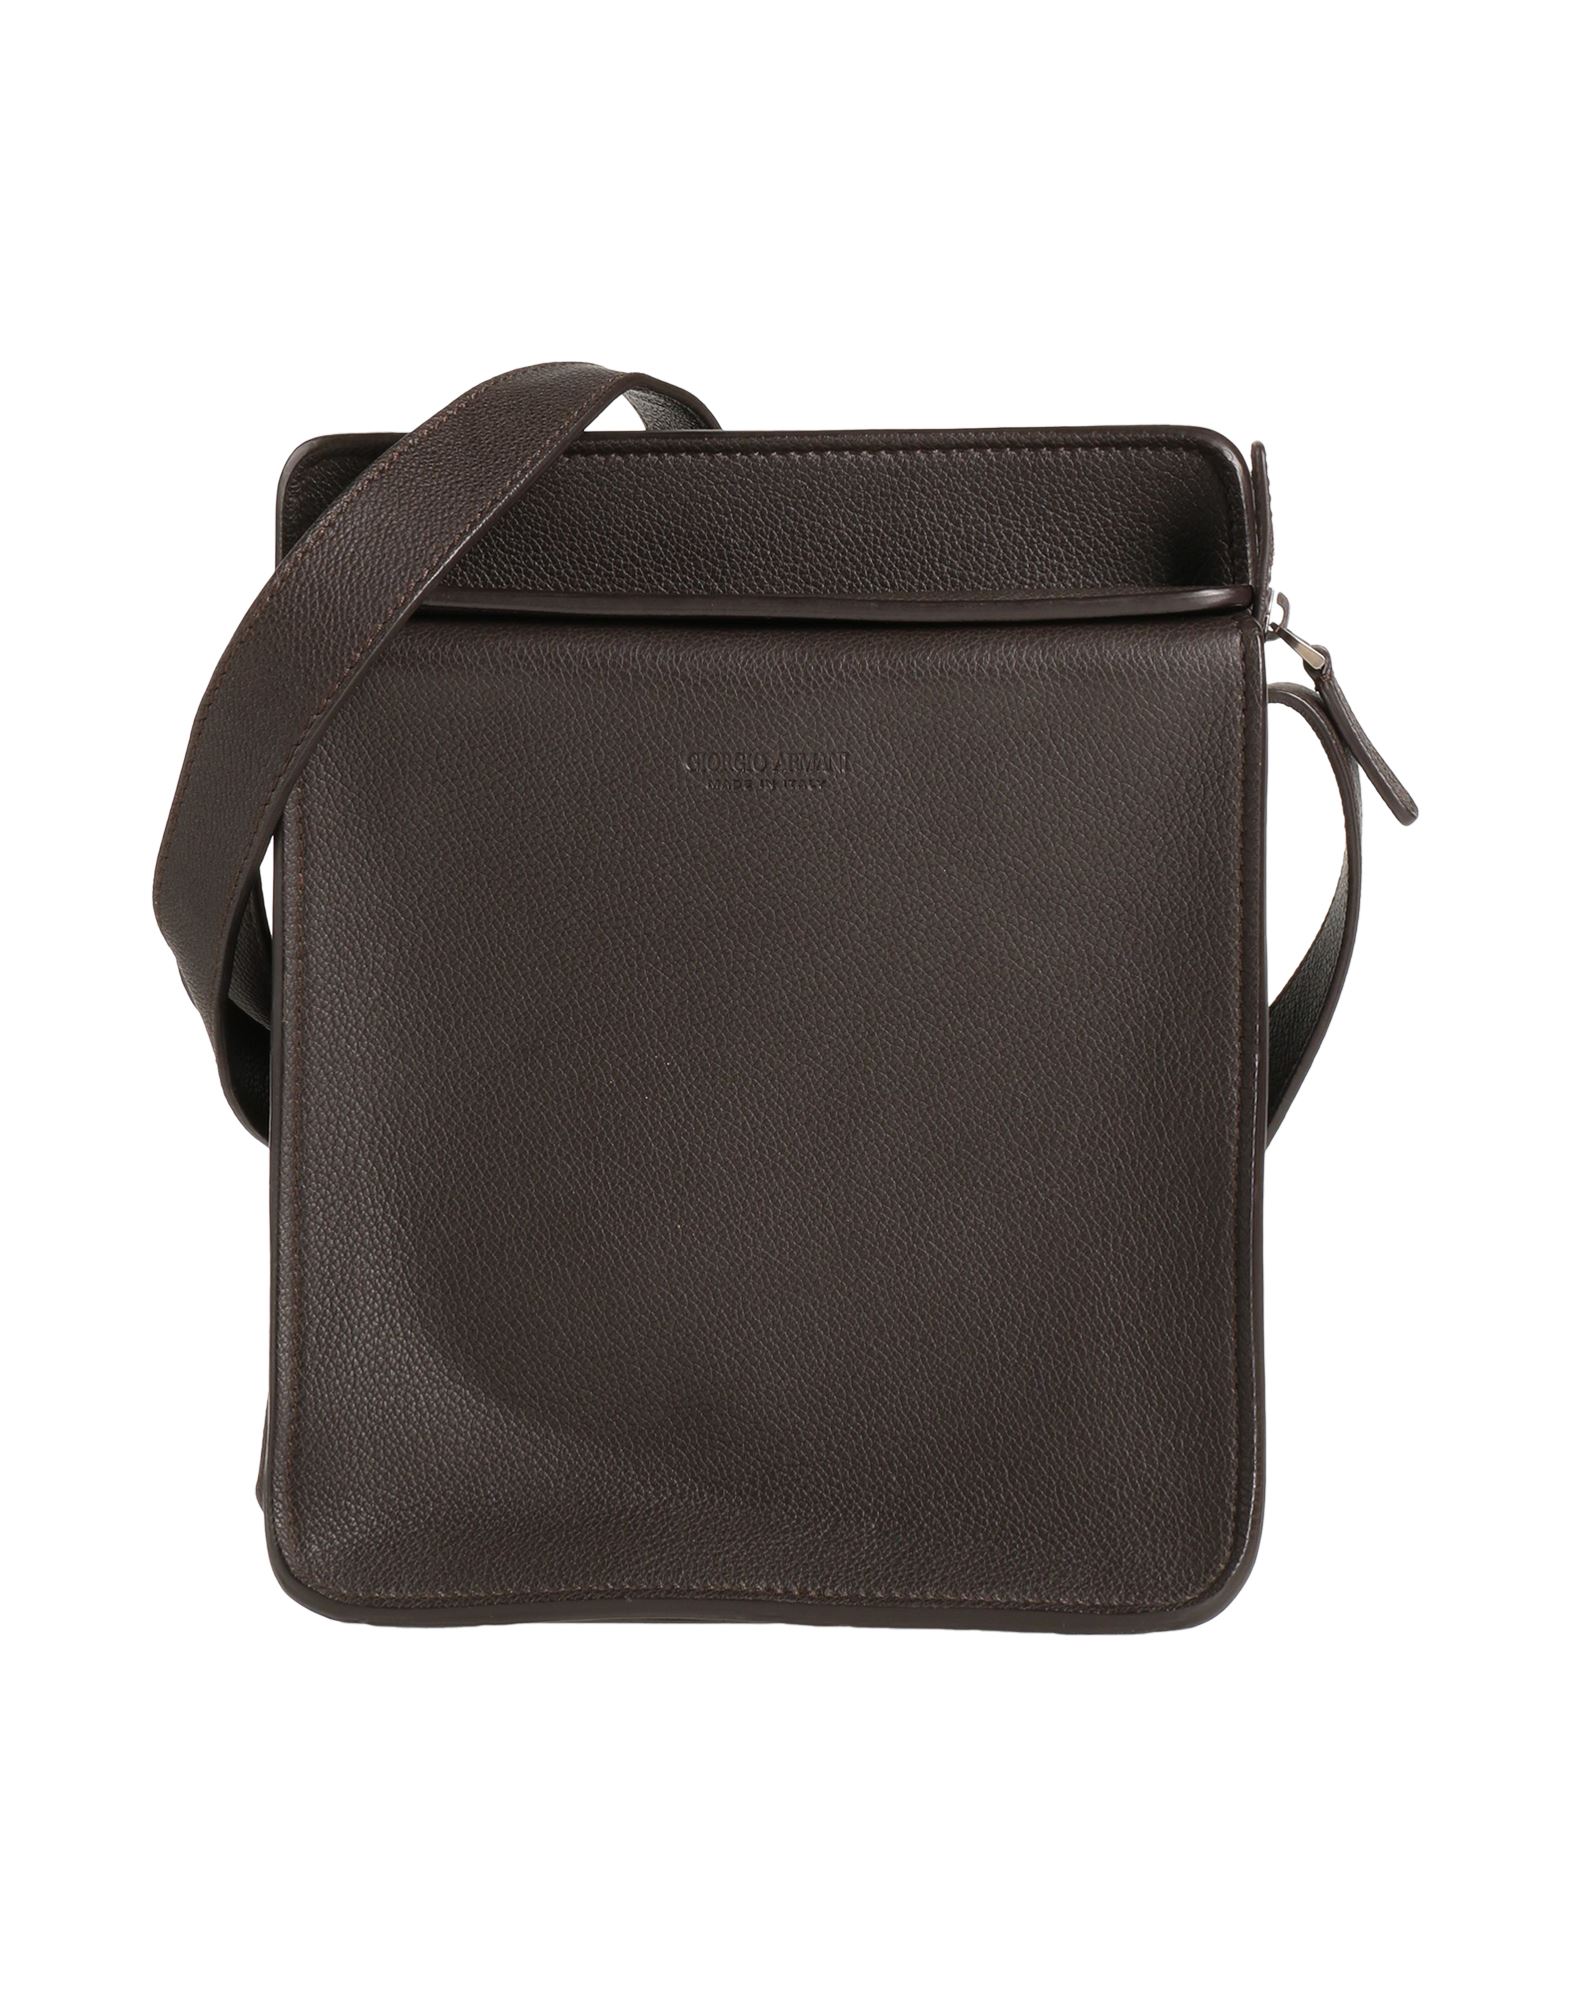 Giorgio Armani Handbags In Dark Brown